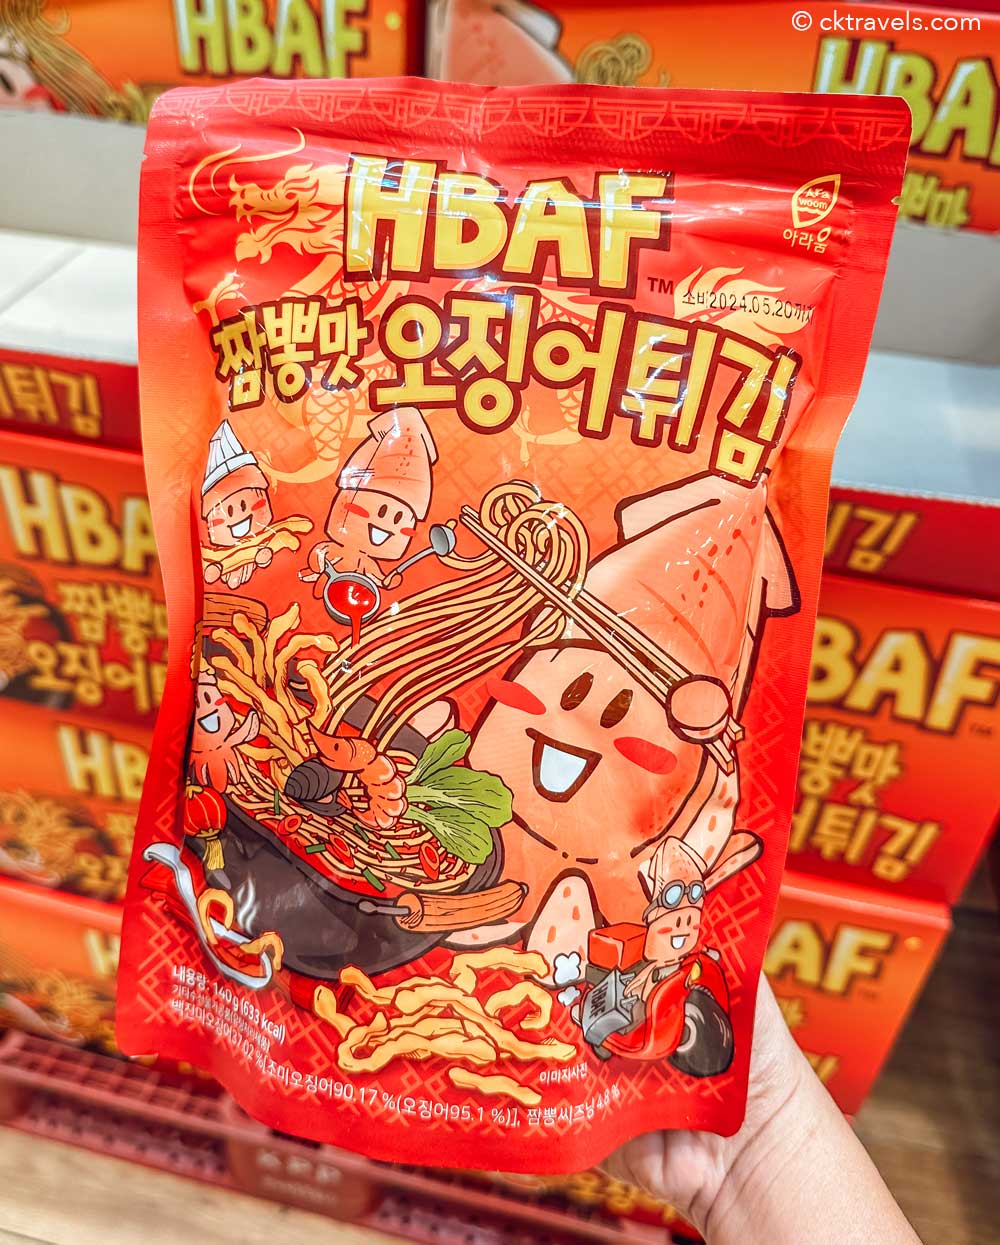 HBAF Fried Squid / Beer Tempura Snacks